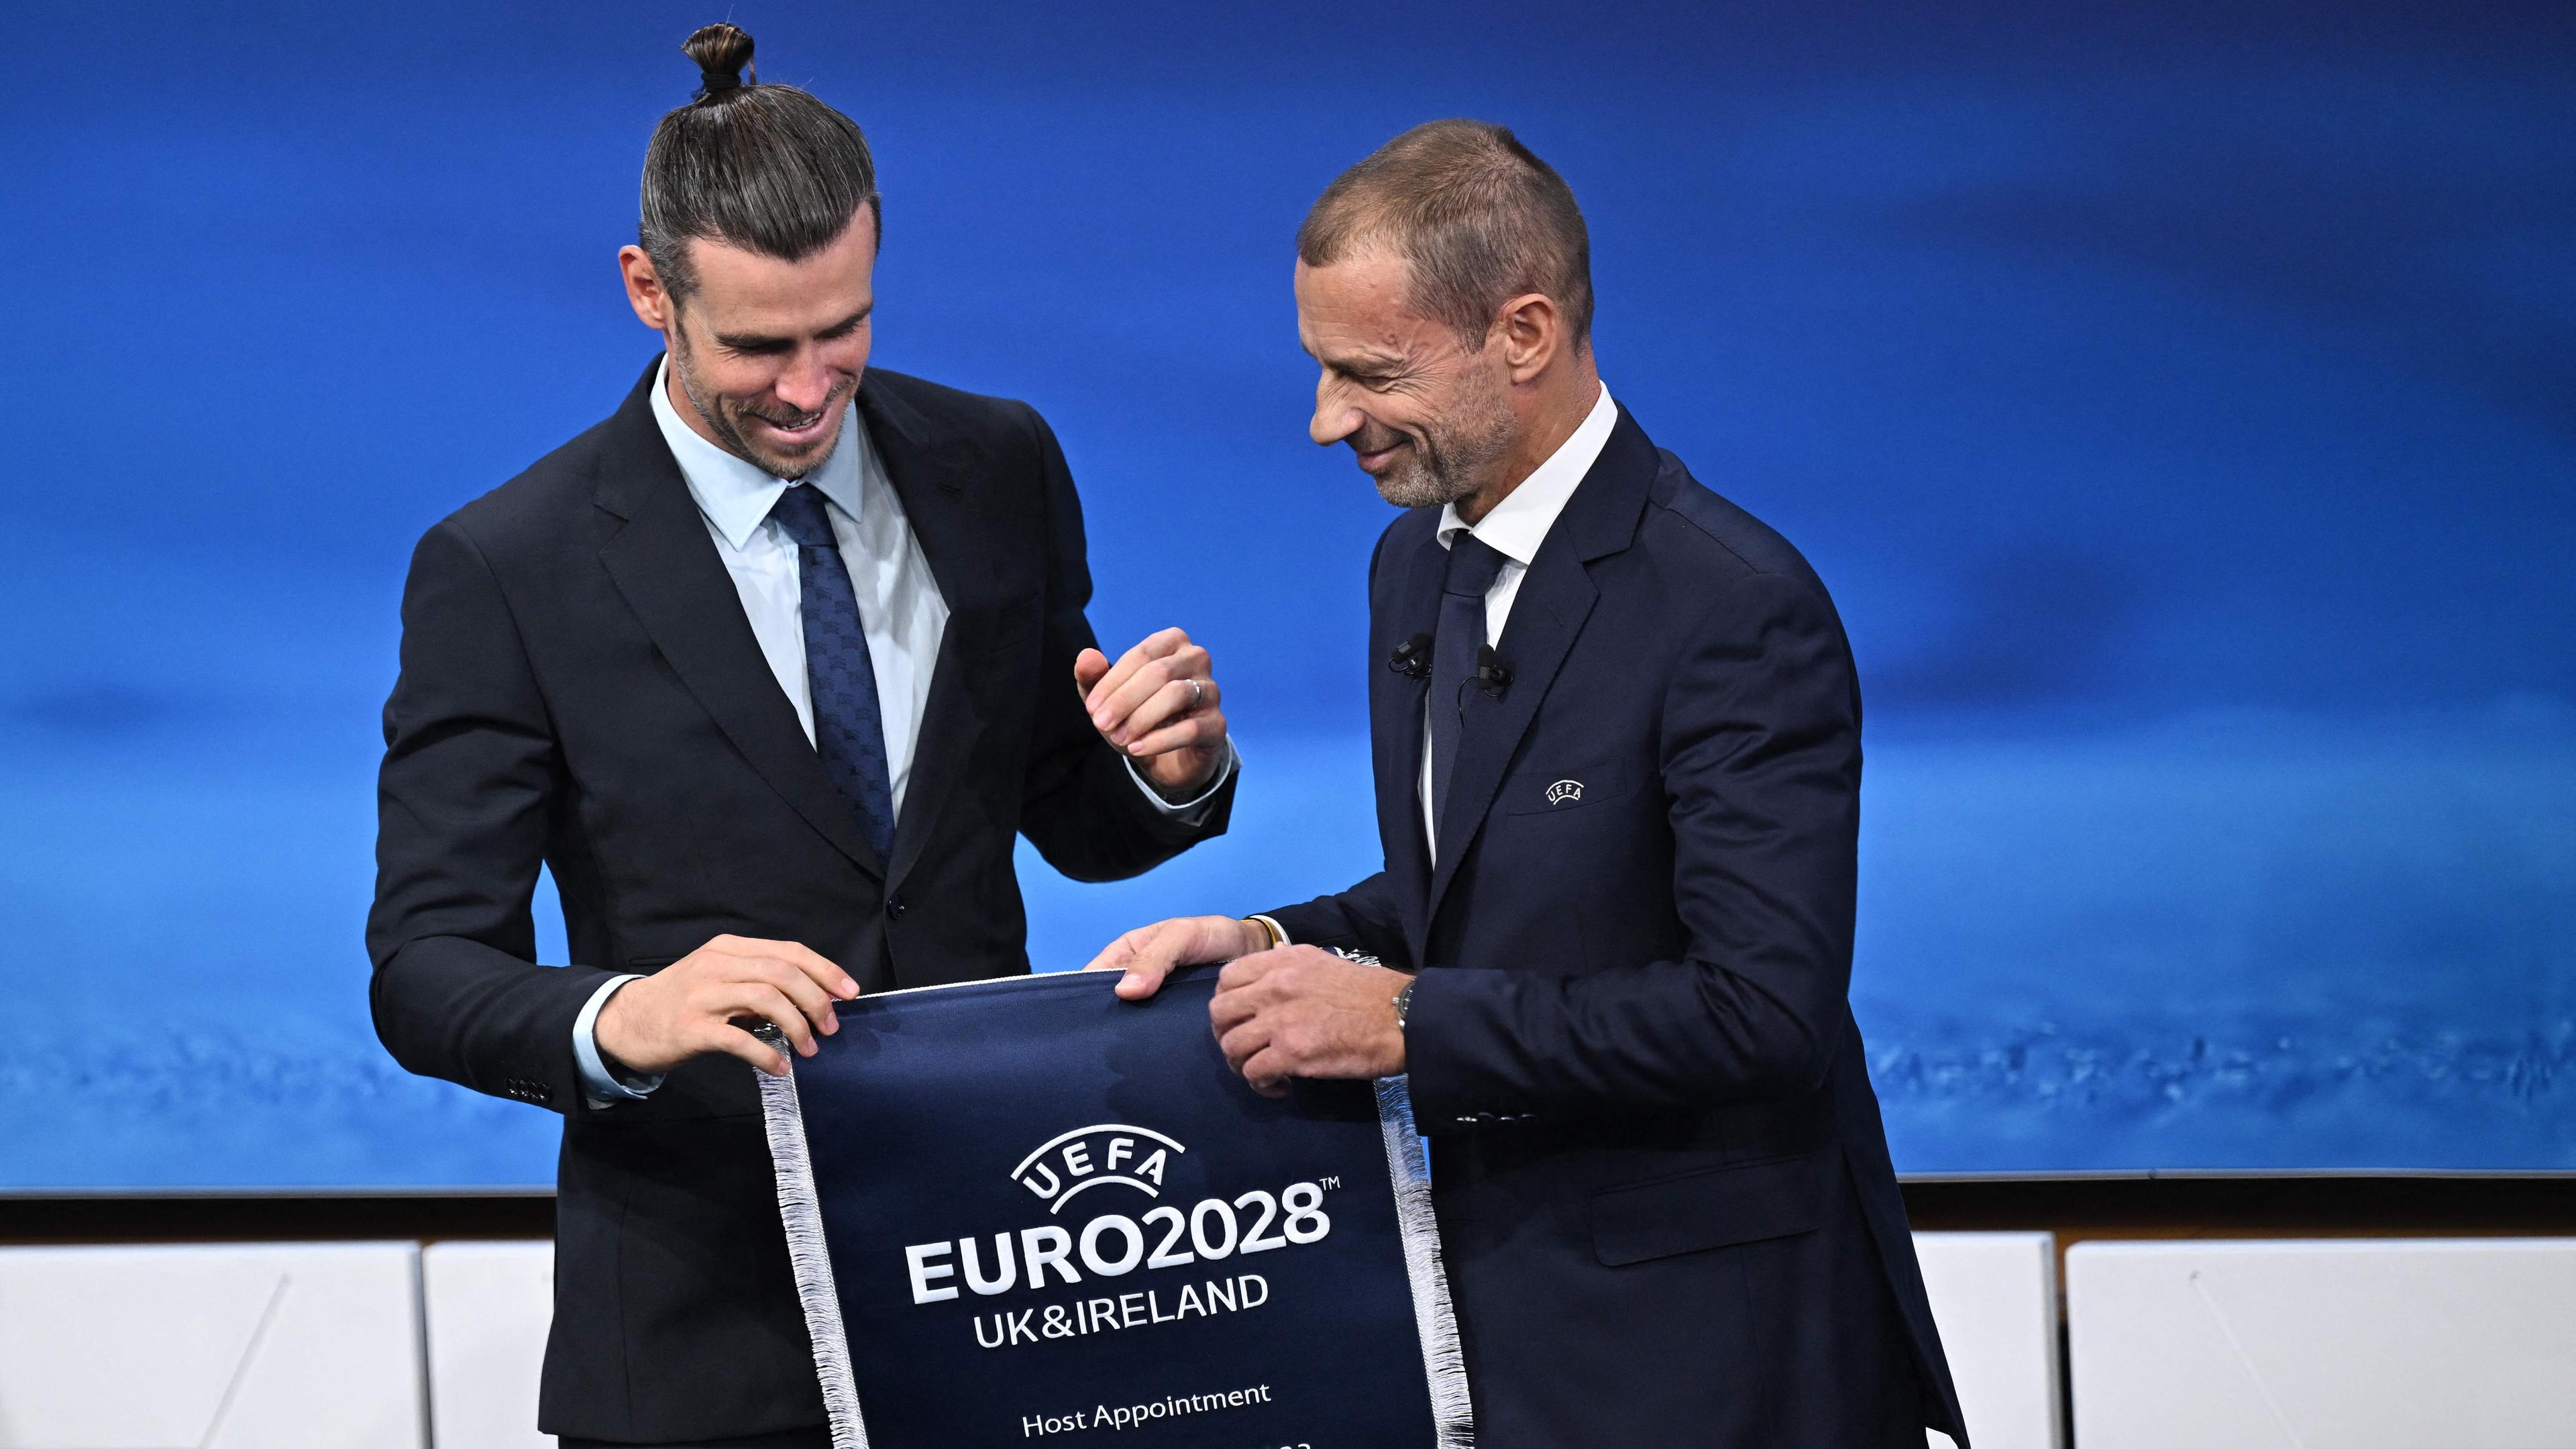 UEFA-Präsident Aleksander Ceferin (r.) gratuliert Gareth Bale, einem Botschafter der EM 2028.